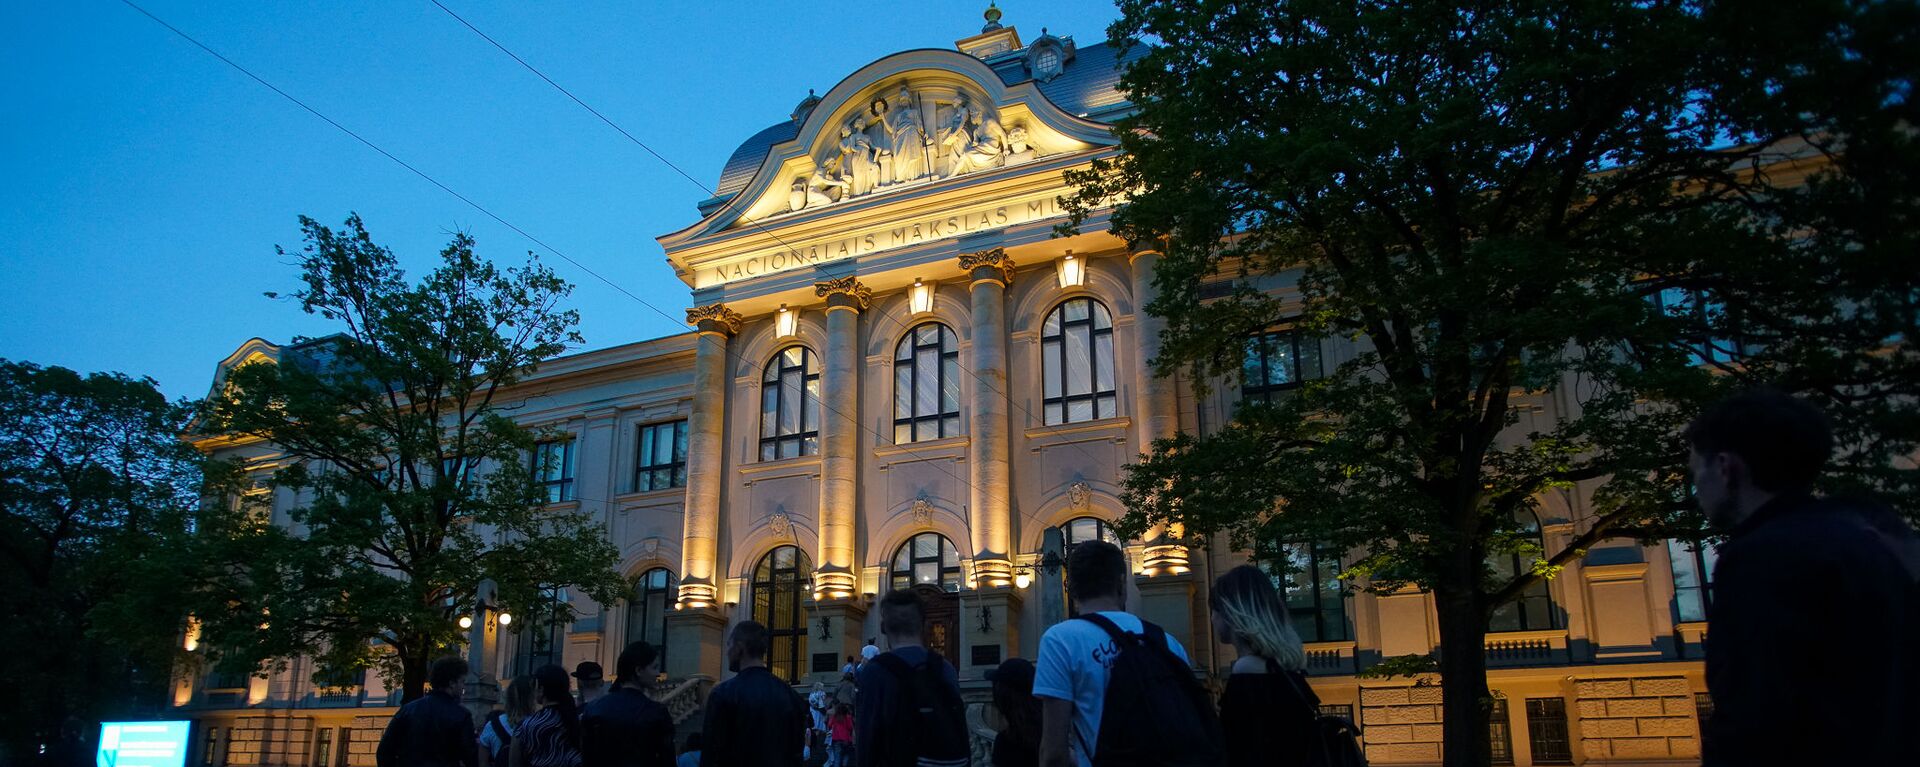 Посетители в очереди в Национальный художественный музей во время акции Ночь музеев в Риге - Sputnik Латвия, 1920, 07.06.2021